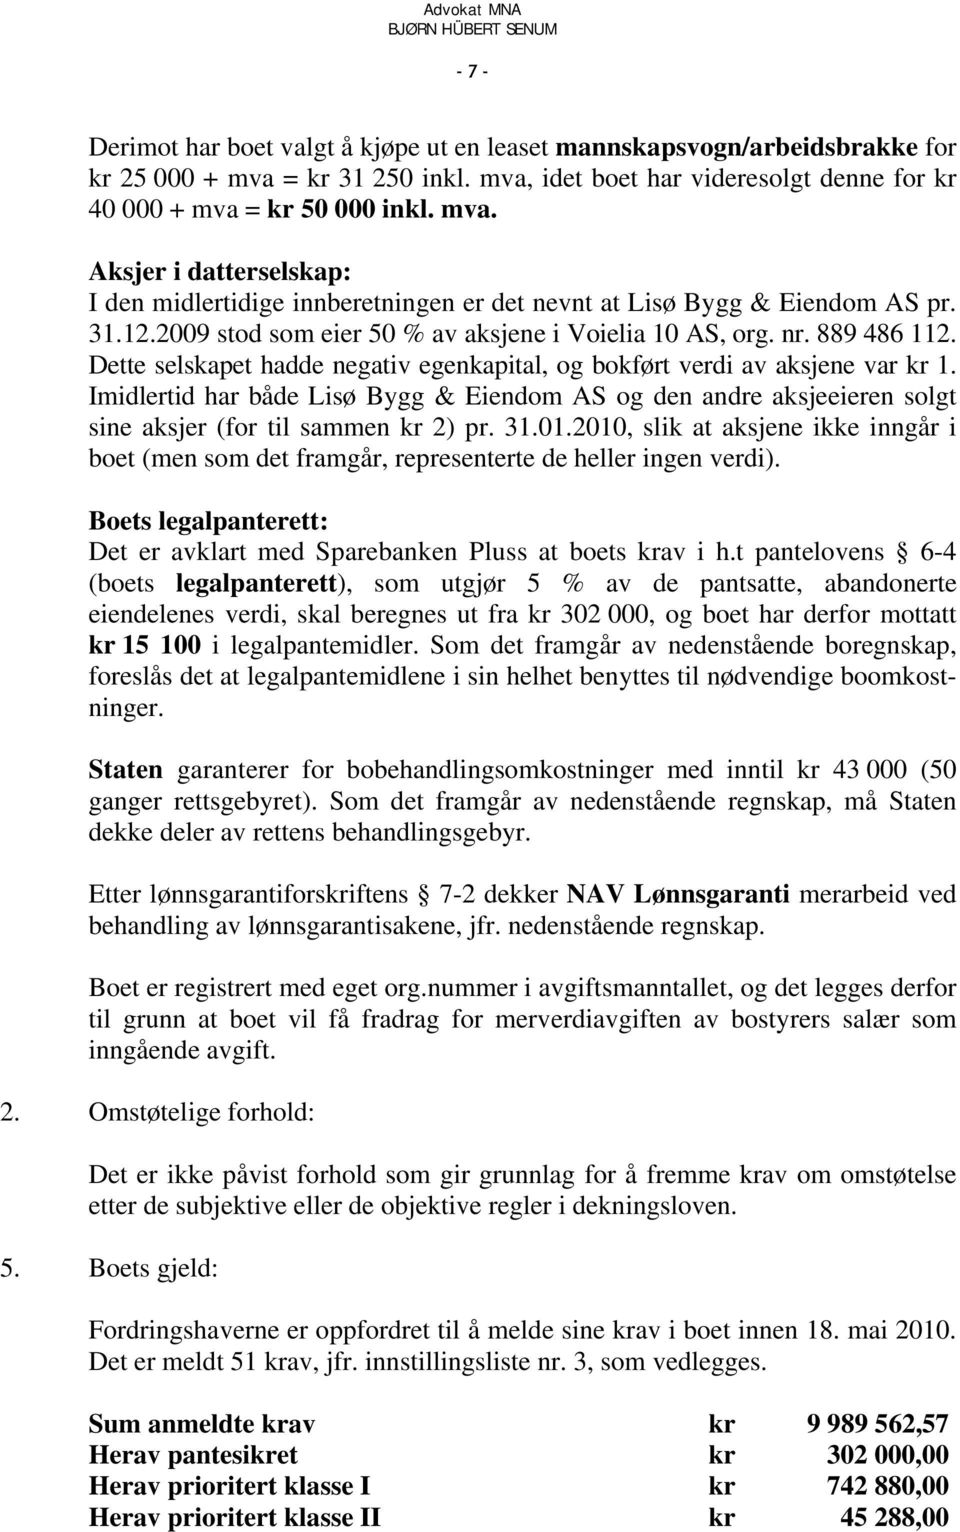 Imidlertid har både Lisø Bygg & Eiendom AS og den andre aksjeeieren solgt sine aksjer (for til sammen kr 2) pr. 31.01.